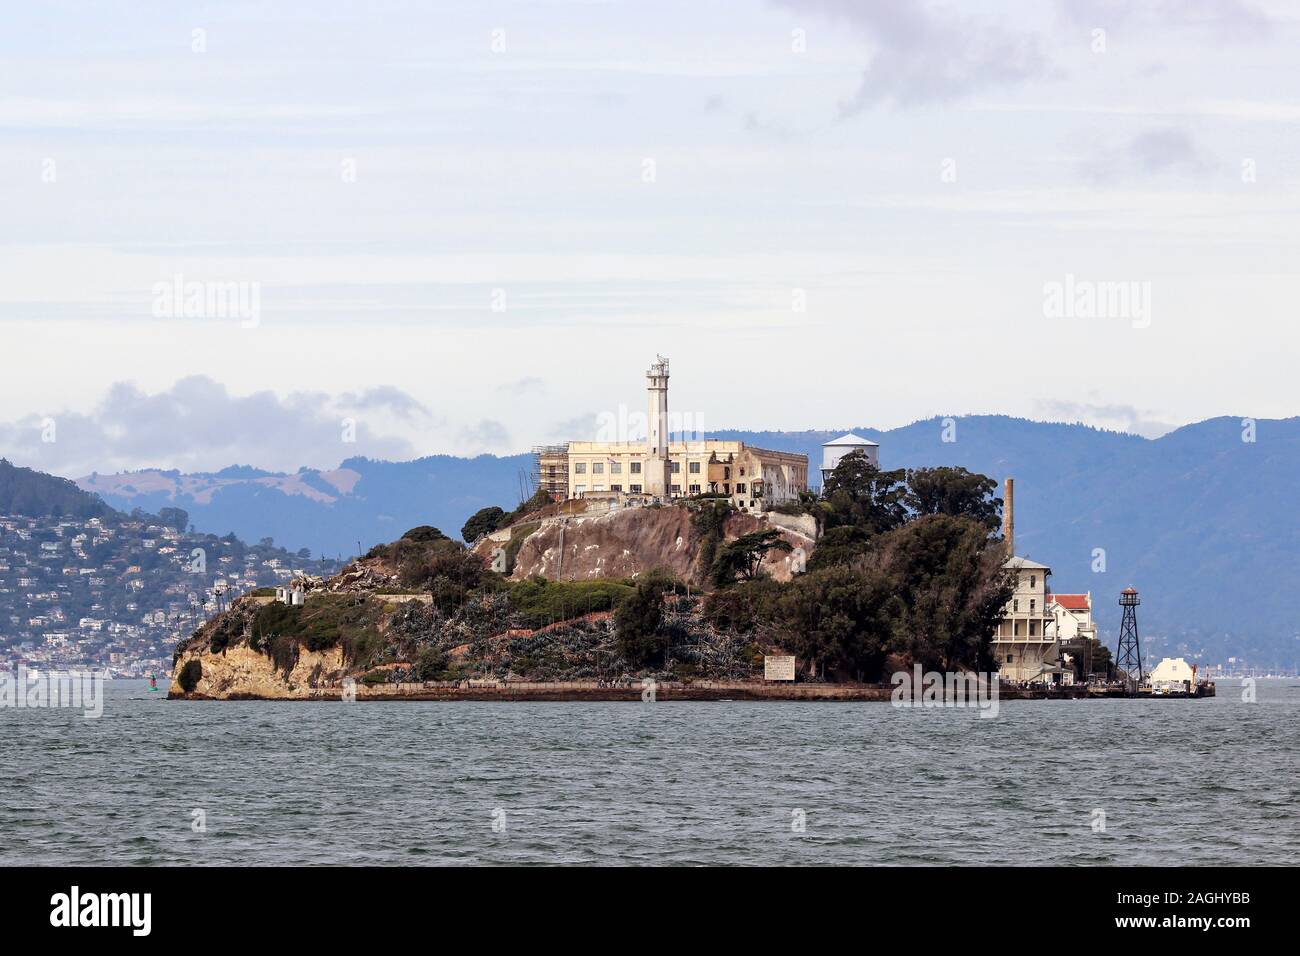 La prigione di Alcatraz isola nella baia di San Francisco, Stati Uniti d'America Foto Stock